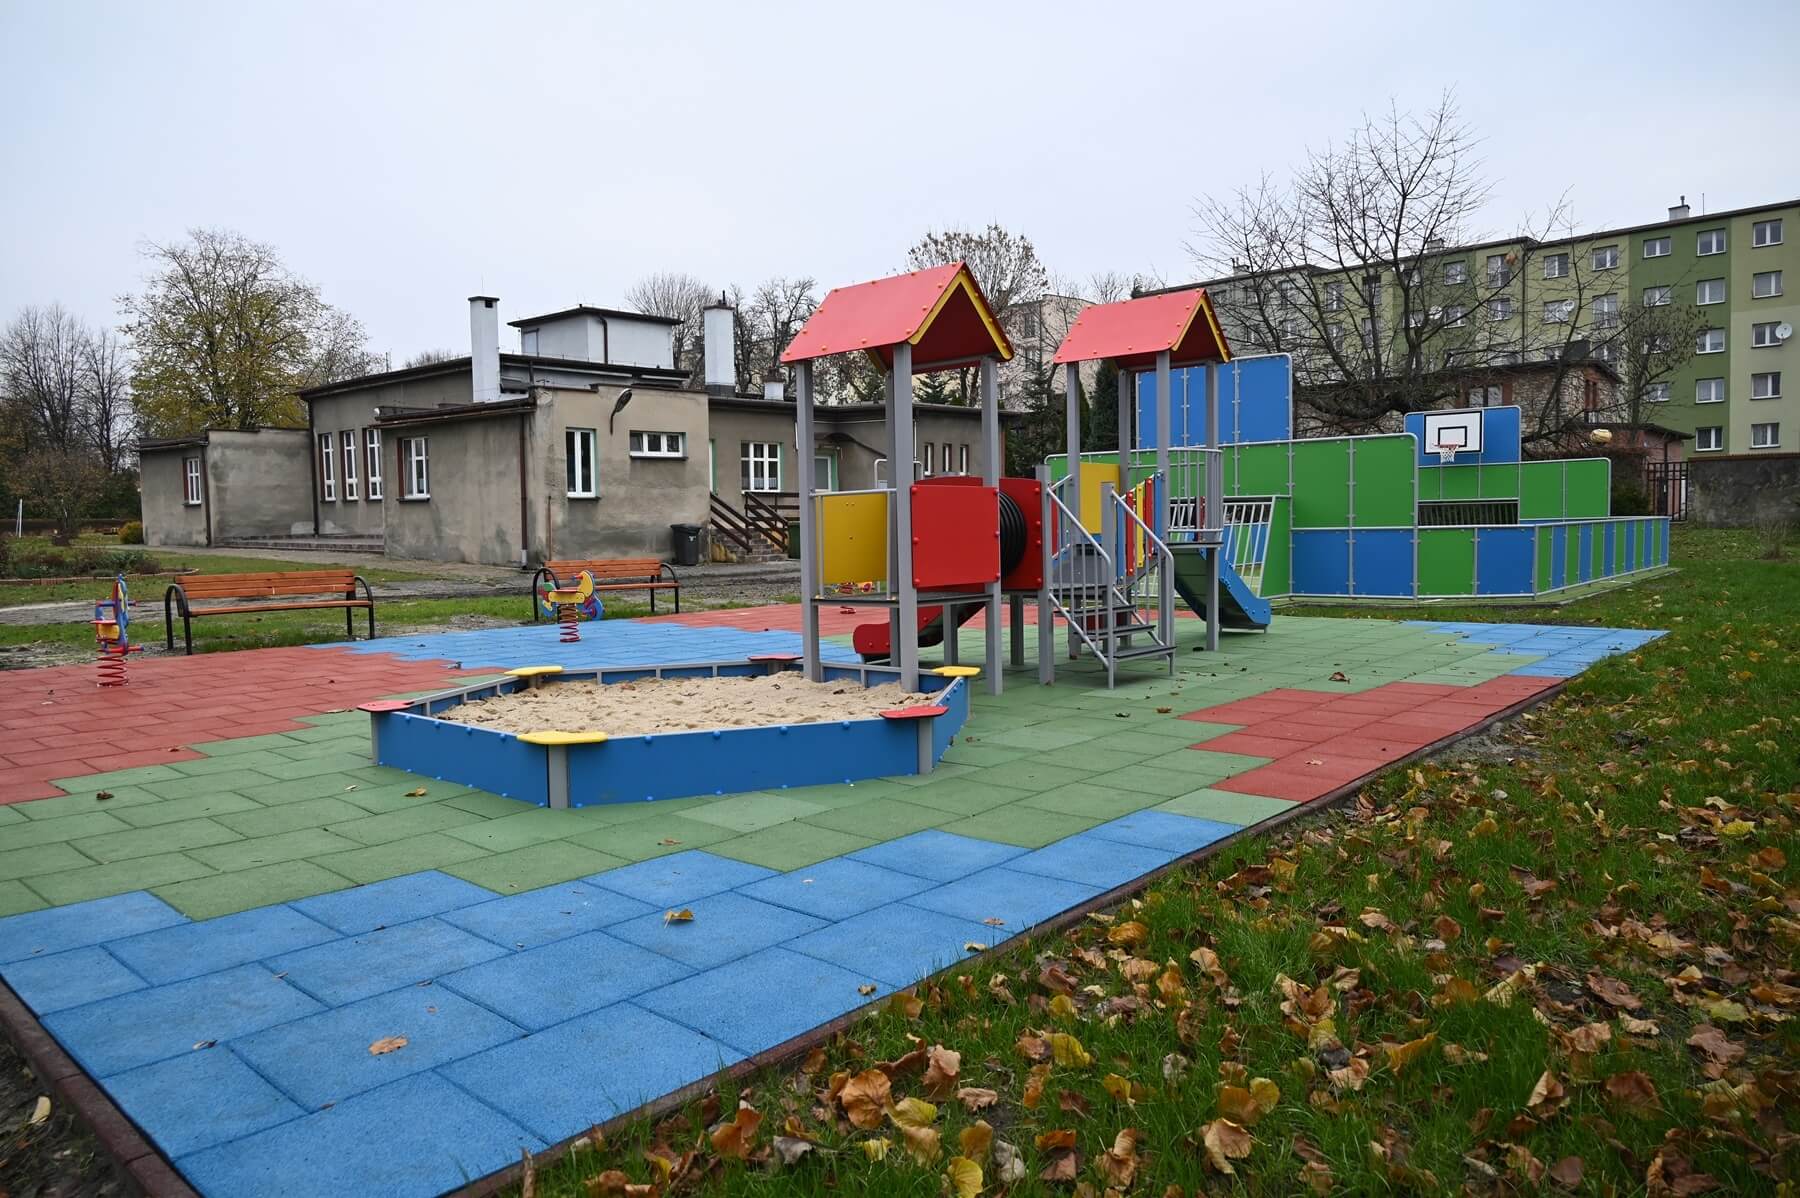 Plac zabaw i miniboisko przy Przedszkolu nr 19 kosztowały ponad 210 tysięcy